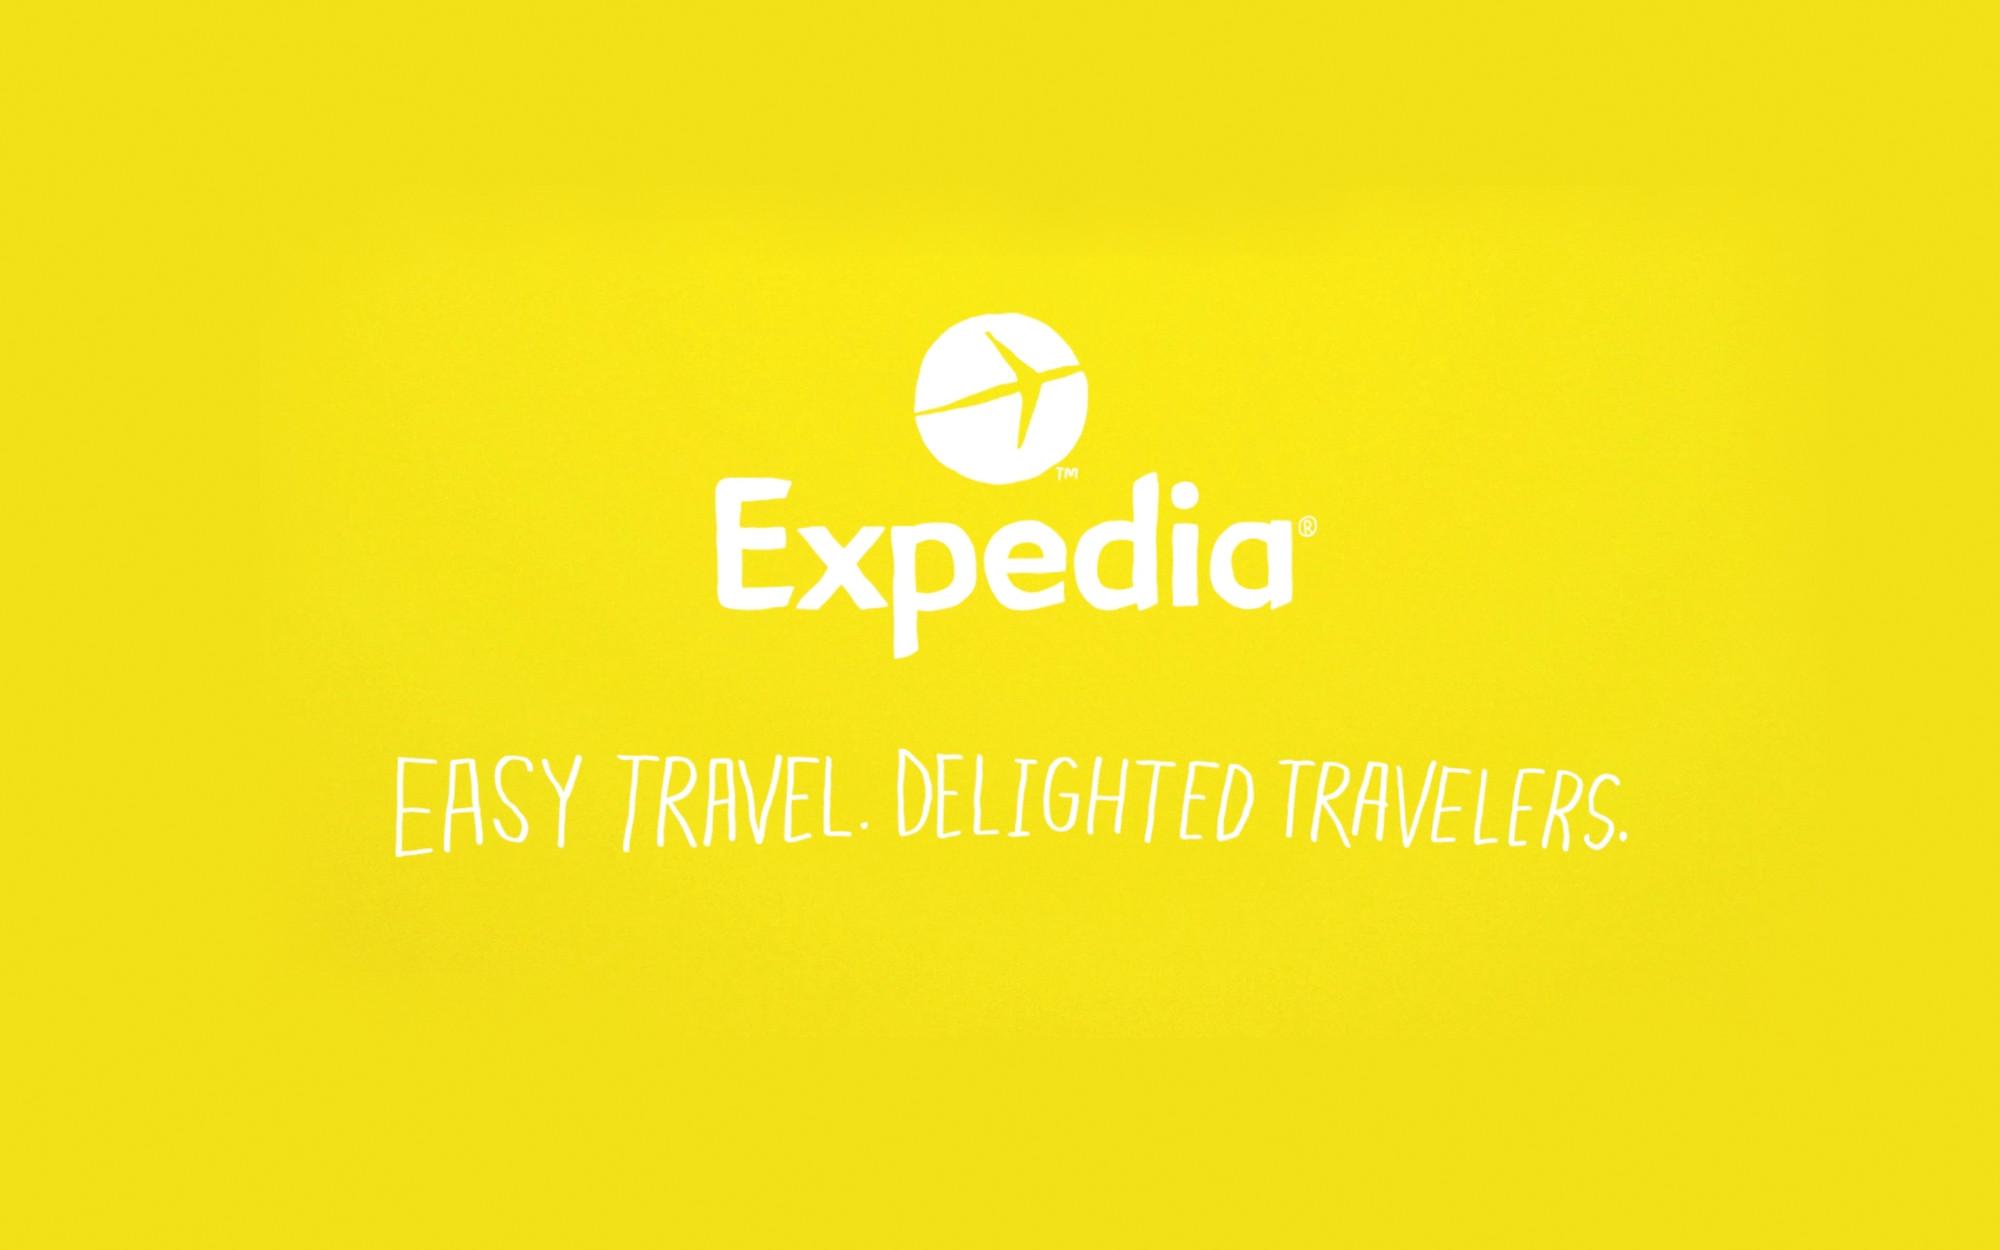 Expedia New Logo - Expedia